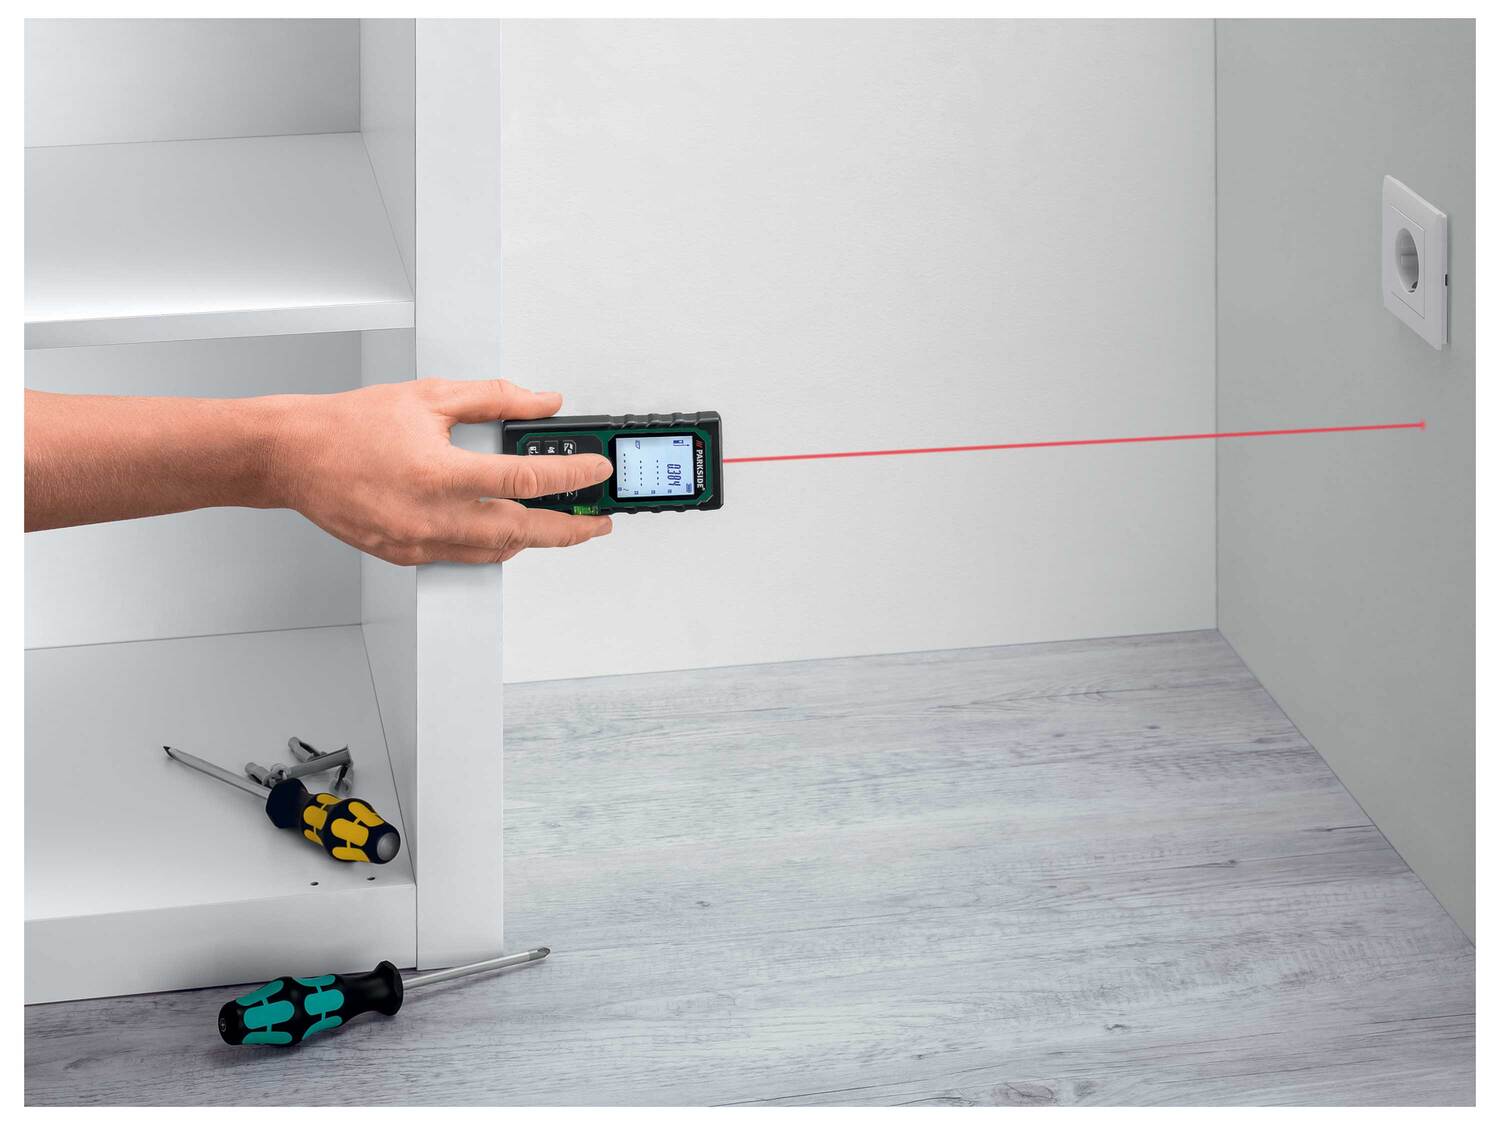 Télémètre laser , le prix 24.99 € 
- Pour mesurer précisément les distances, ...